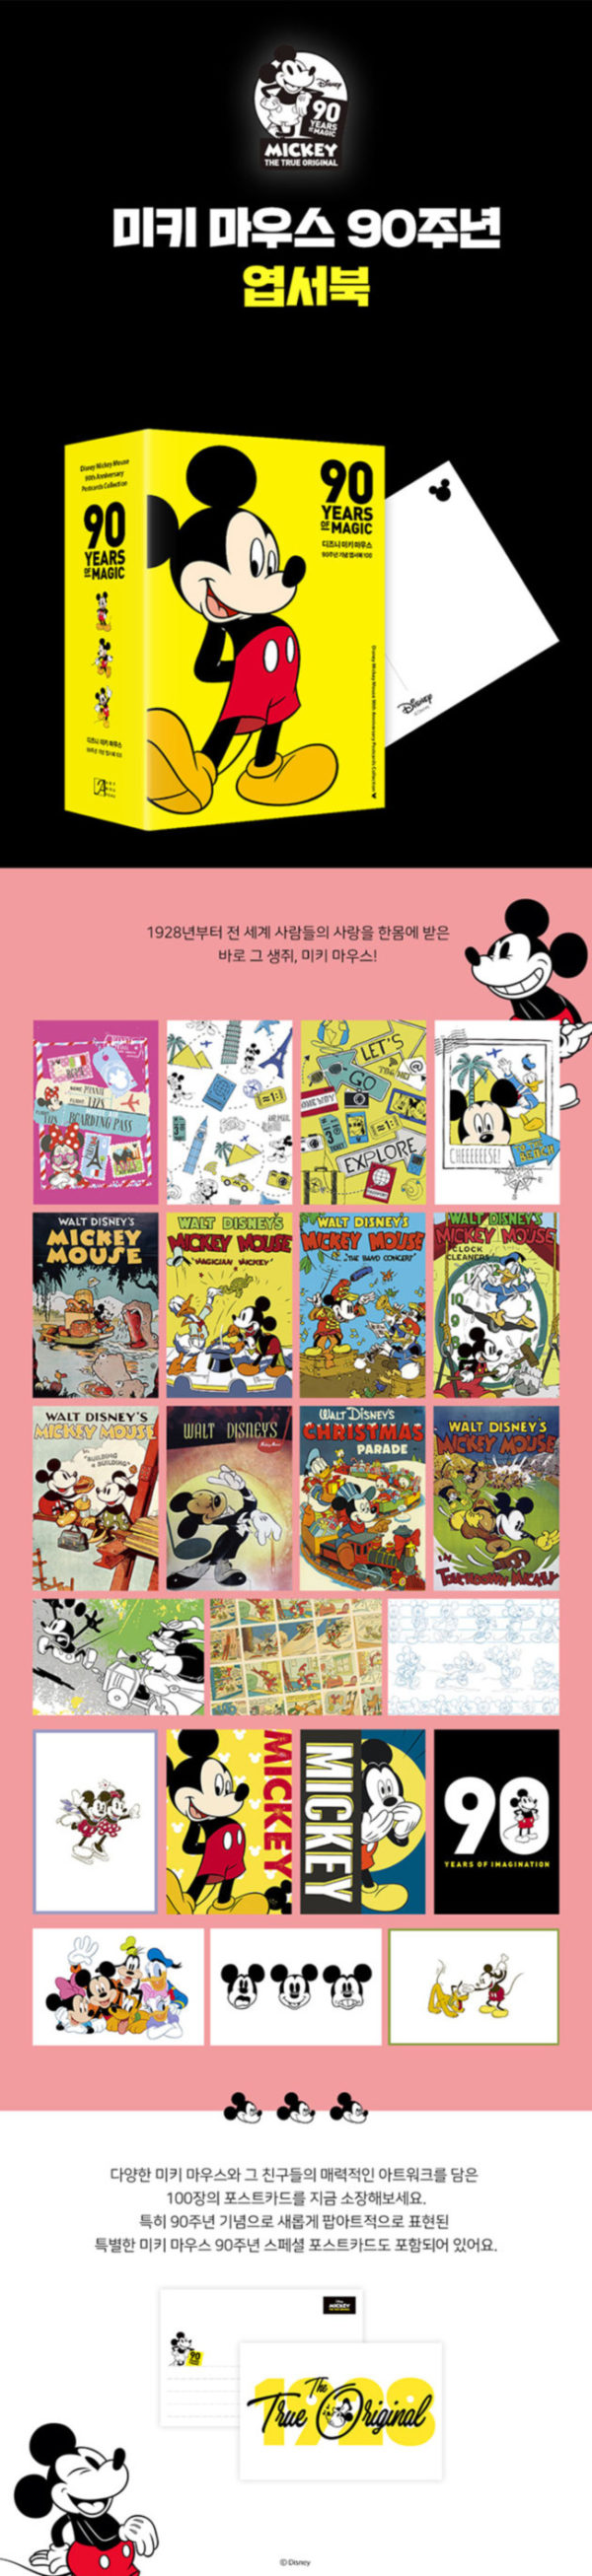 ディズニー ミッキーマウス 90周年記念ポストカード DISNEY POSTCARD